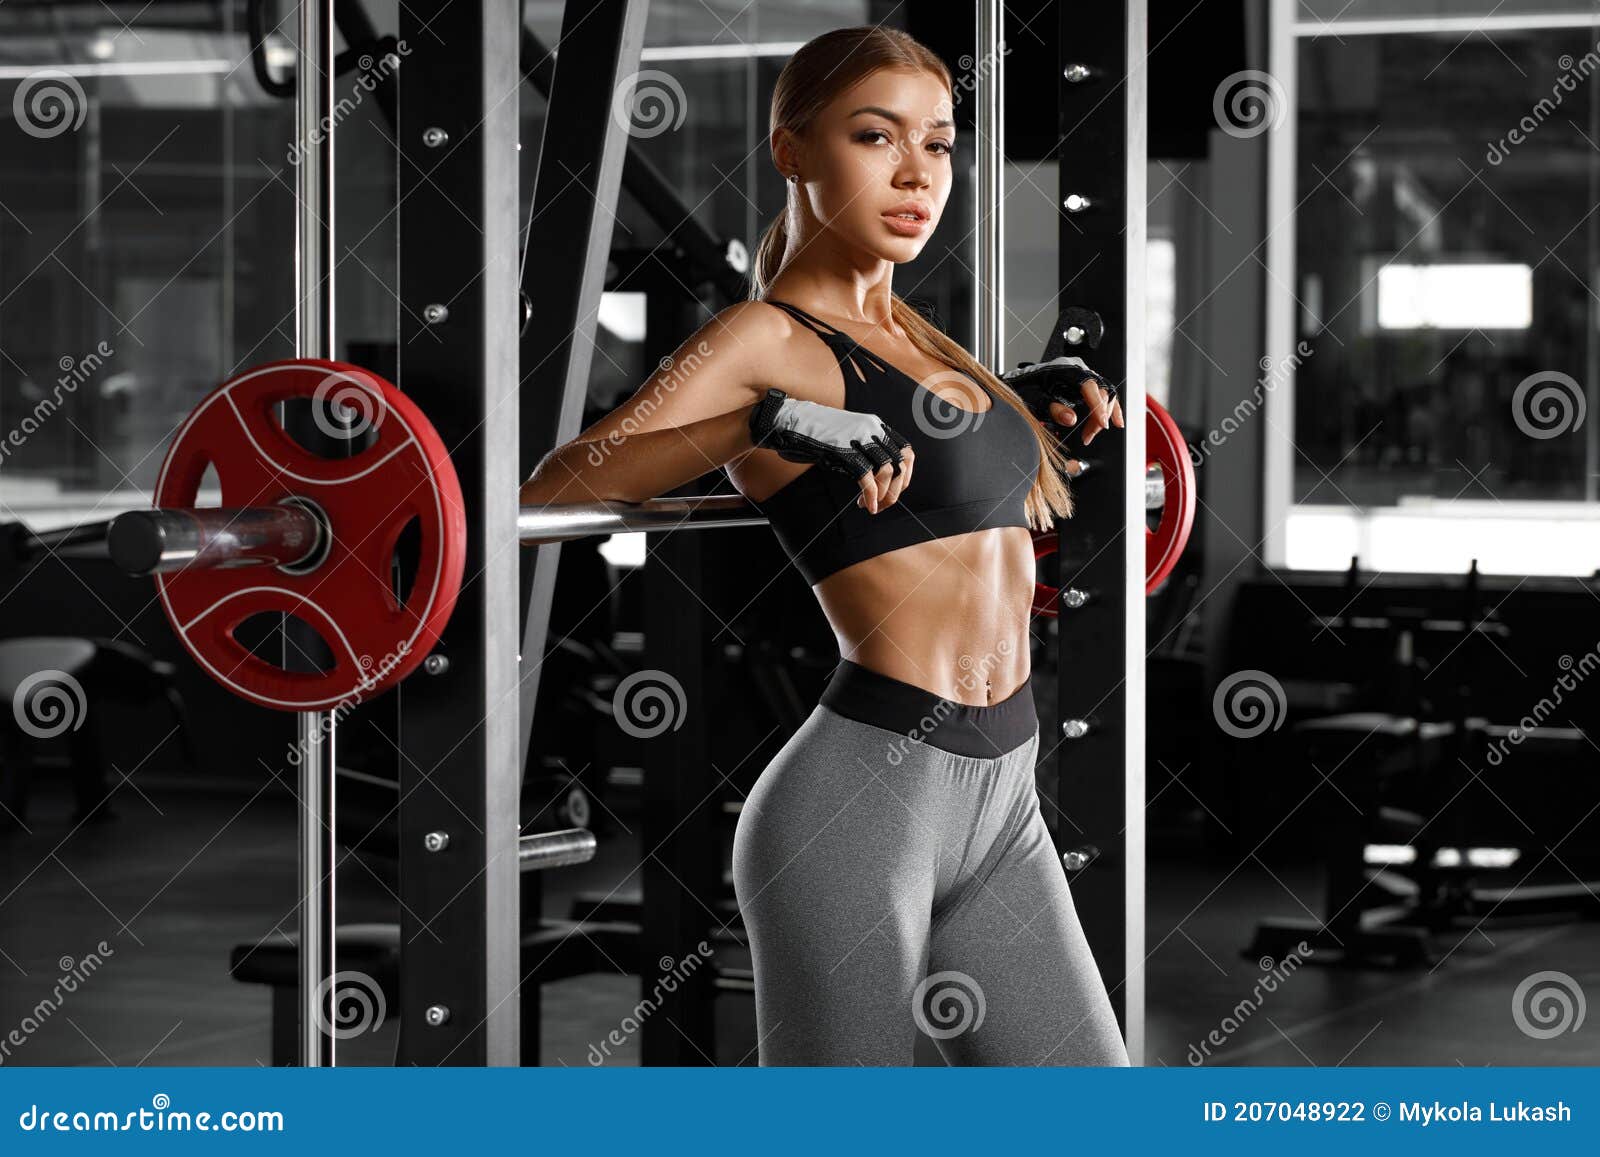 Sexy Gym Girl